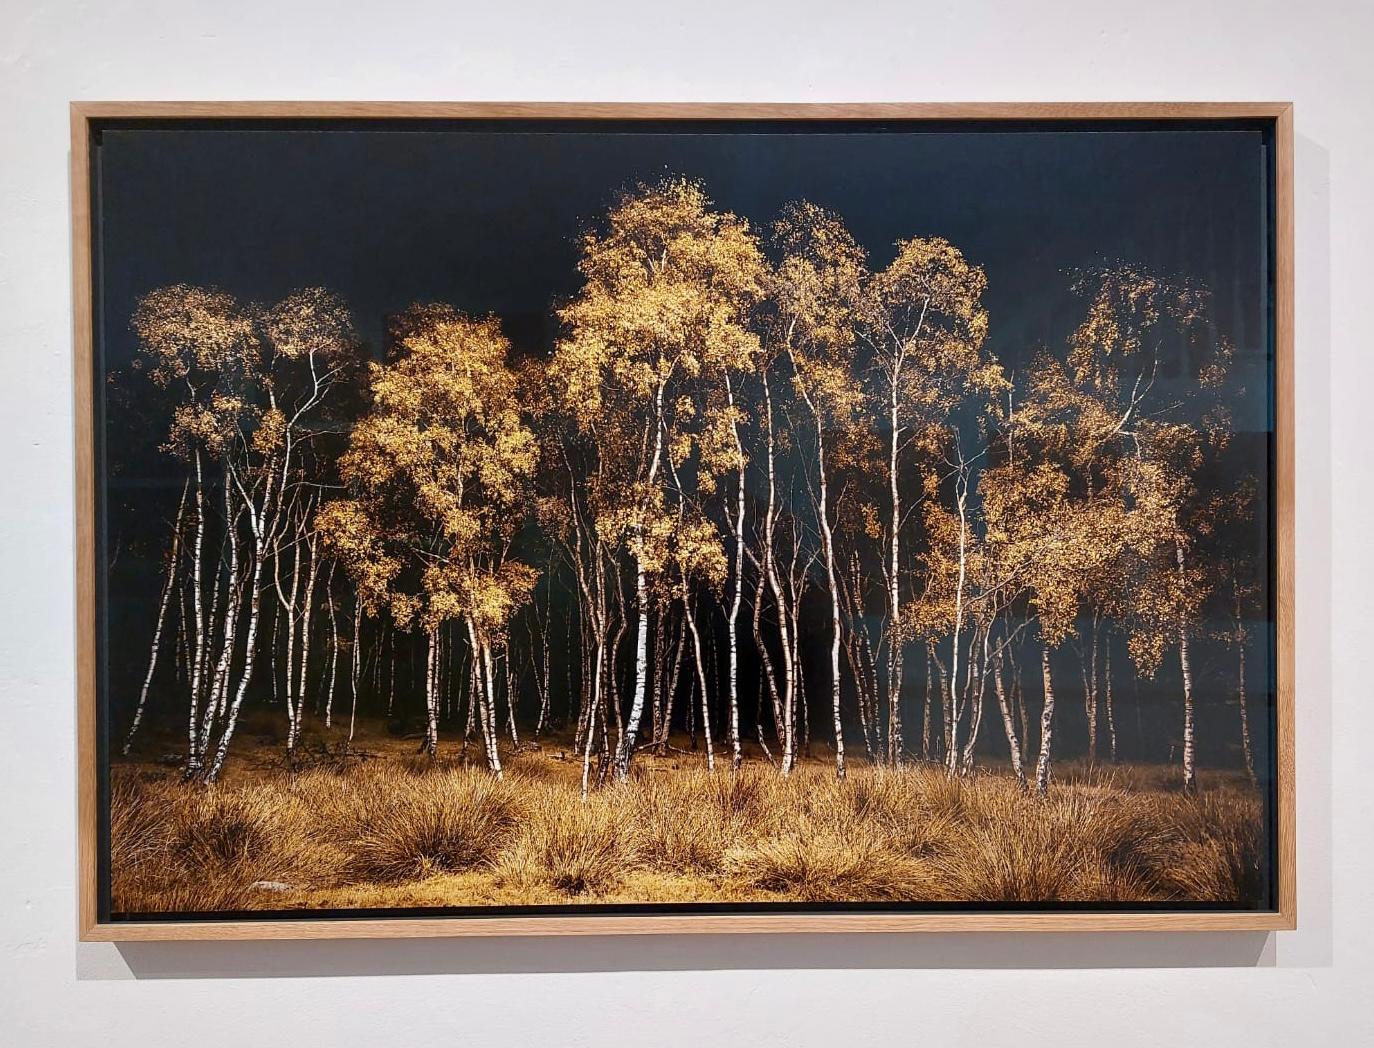 Twilight #20, Birchwood (Archival Pigment Print on Dibond in Oak frame) - Black Landscape Photograph by Jasper Goodall